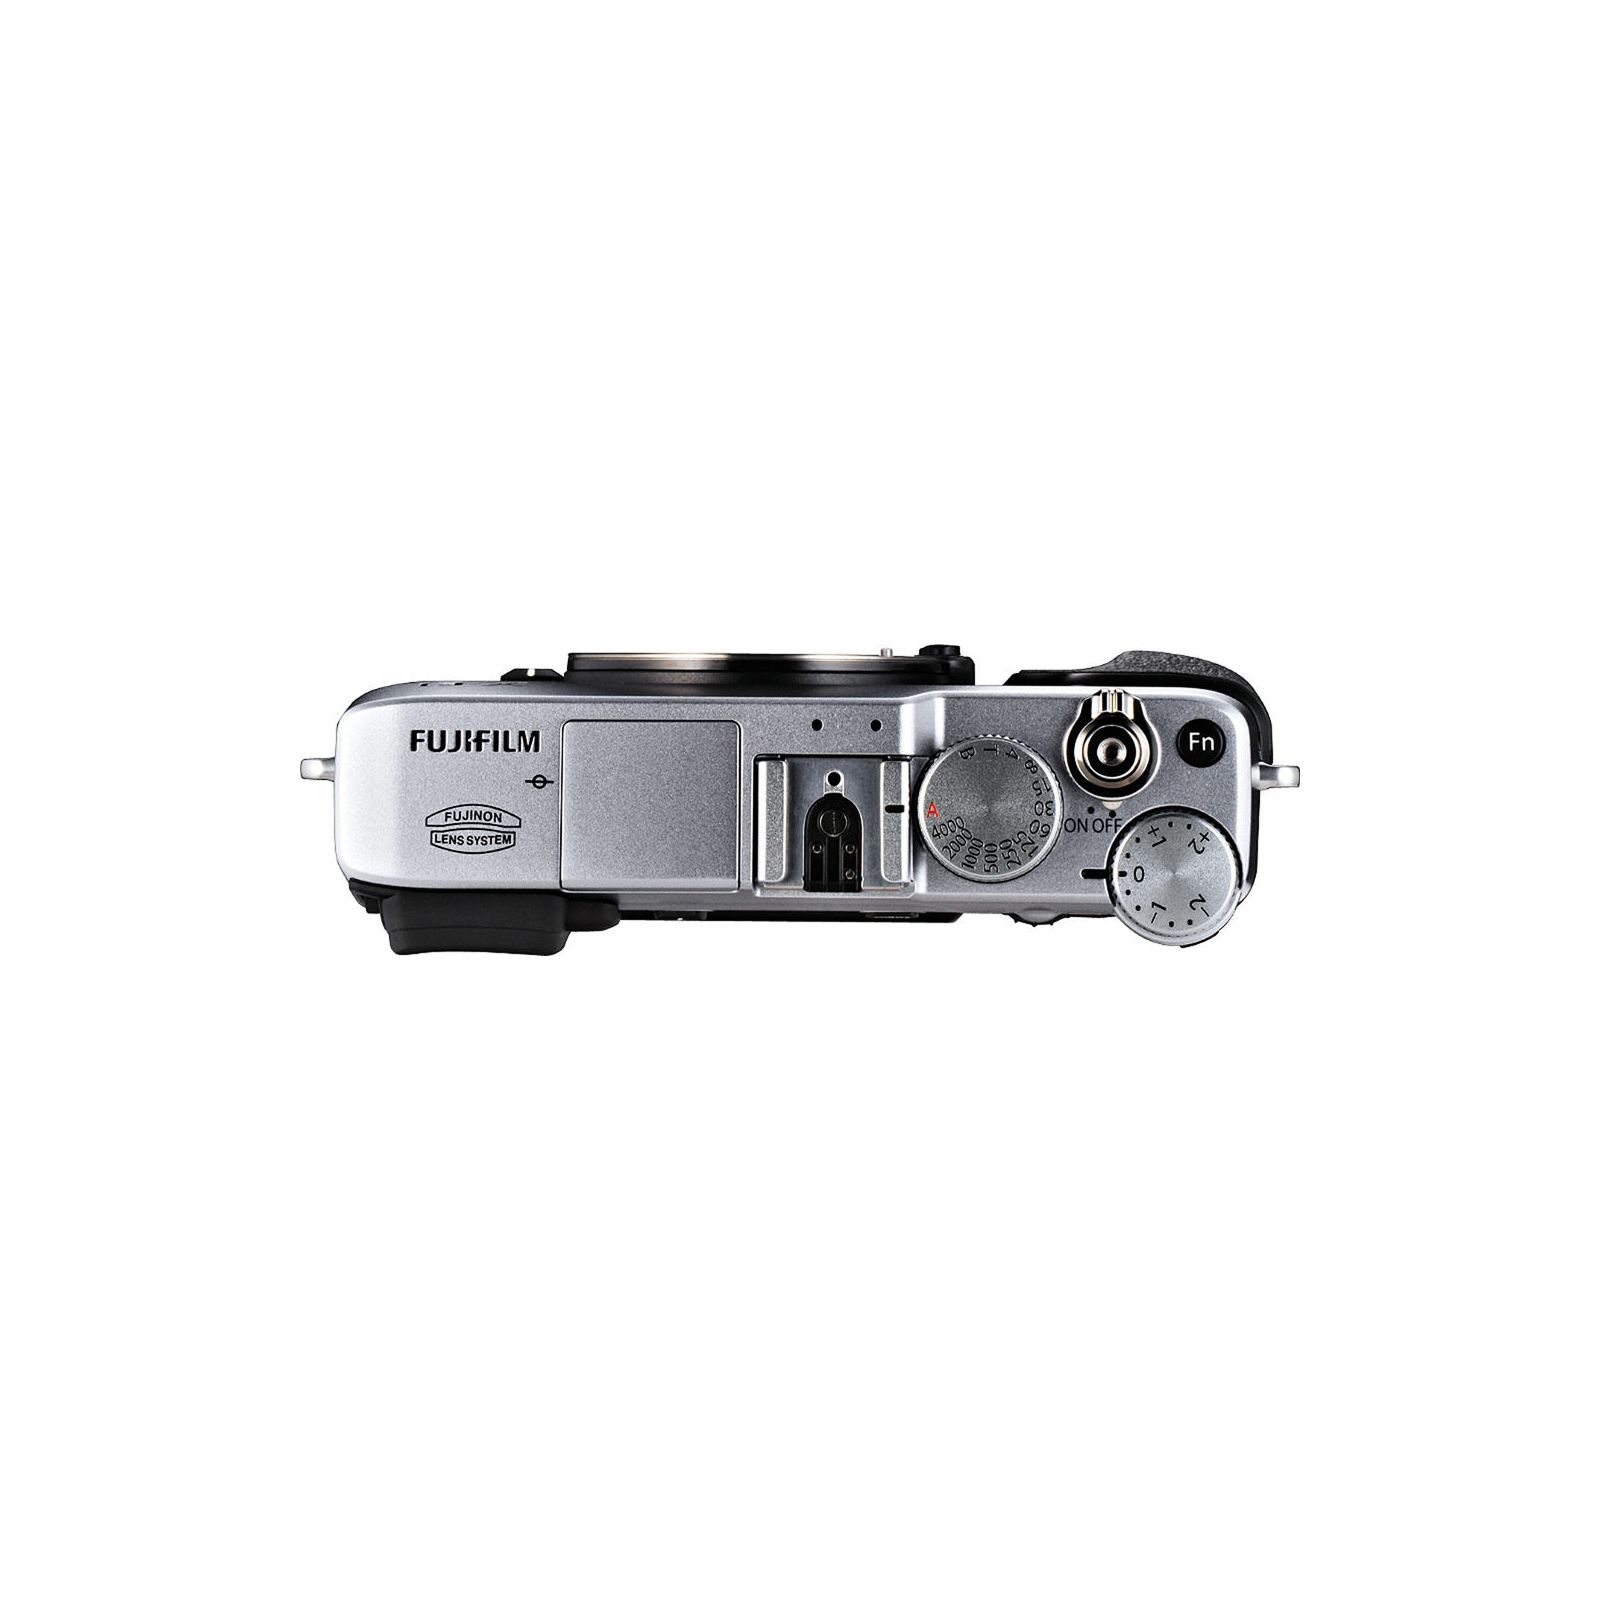 Fuji Finepix X-E1 Body Silver srebreni Fujifilm X-E1 16MP APS- Trans CMOS II, 3,0" LCD, 1,040K + OVF